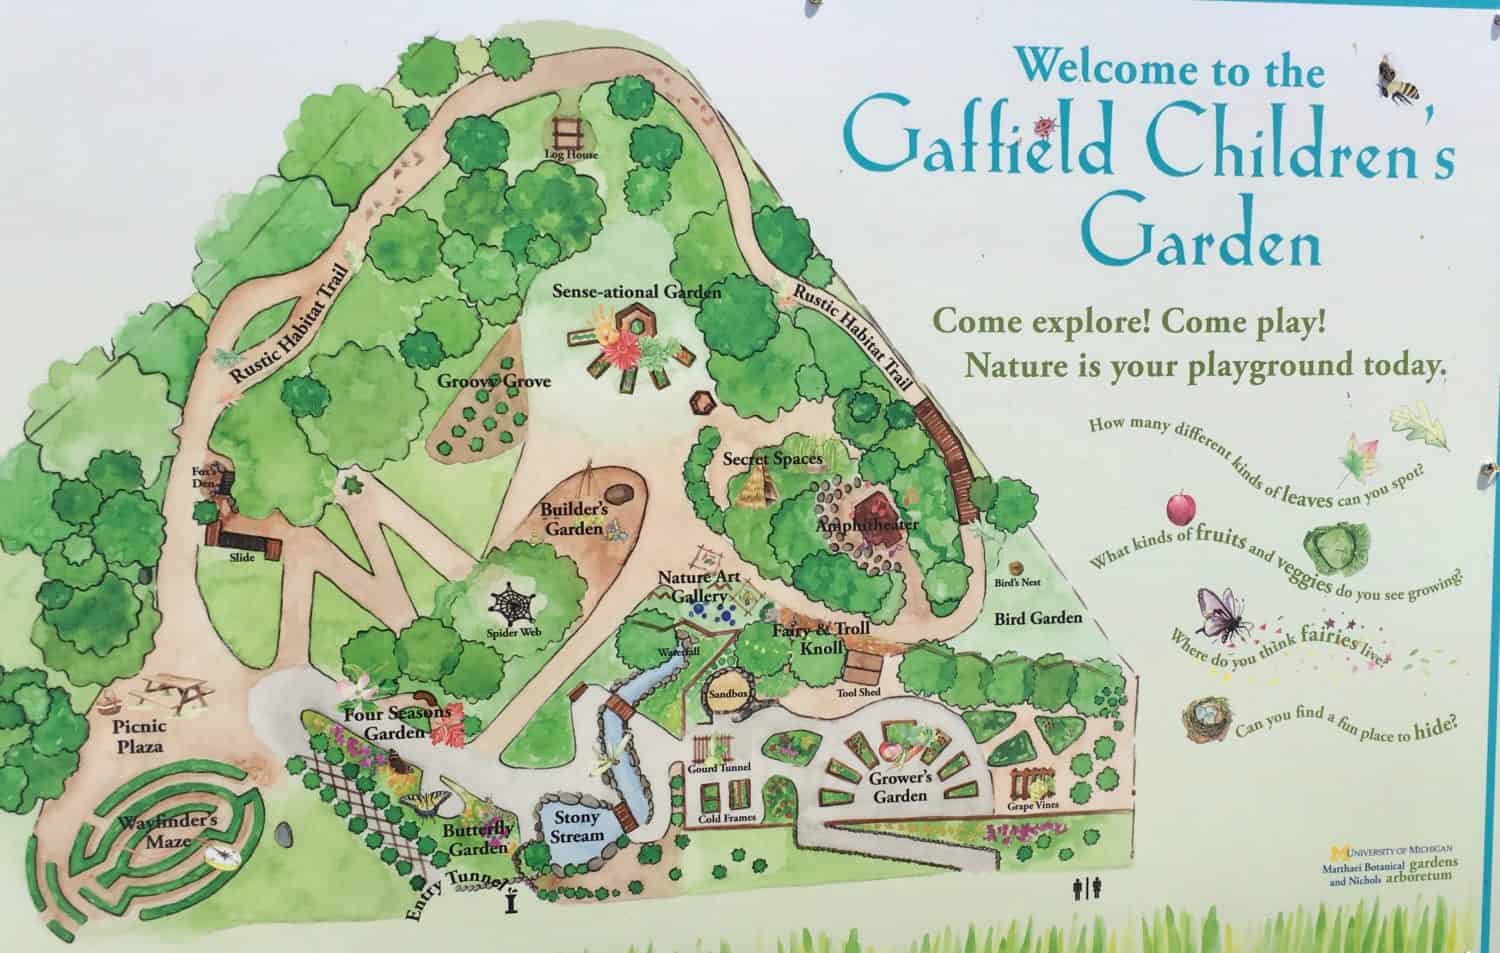 Matthaei Botanical Garden - Children's Garden - Map